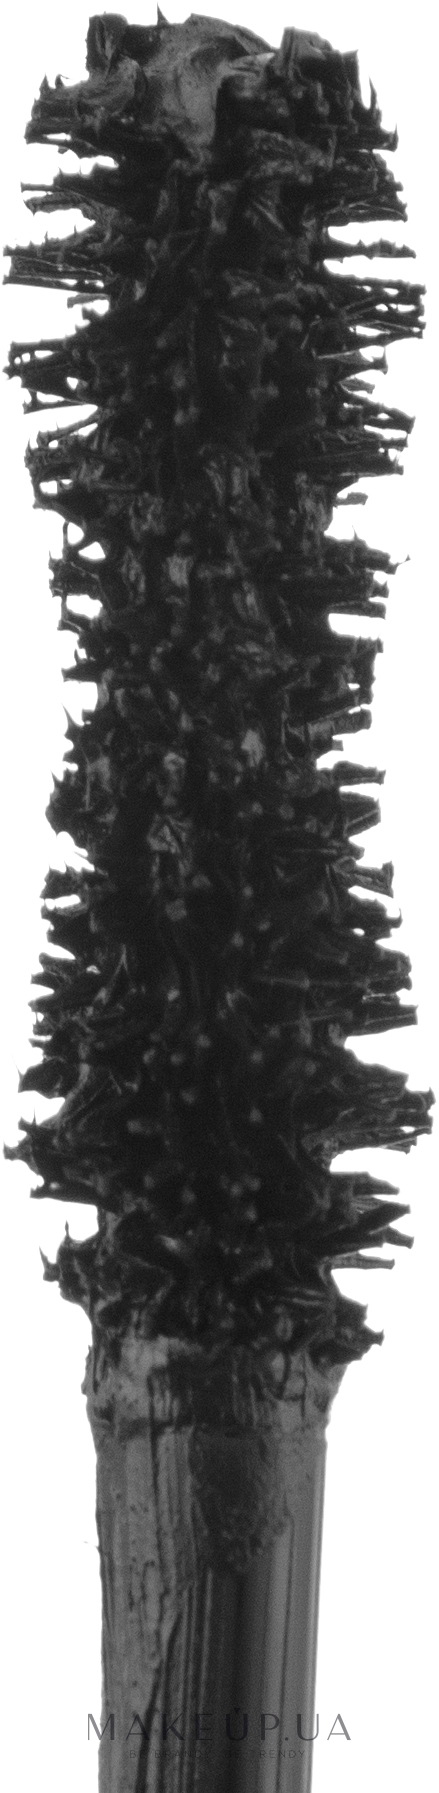 Тушь для ресниц "Объемная" - Couleur Caramel Mascara Recharge (сменный блок) — фото (41 - Extra Black)